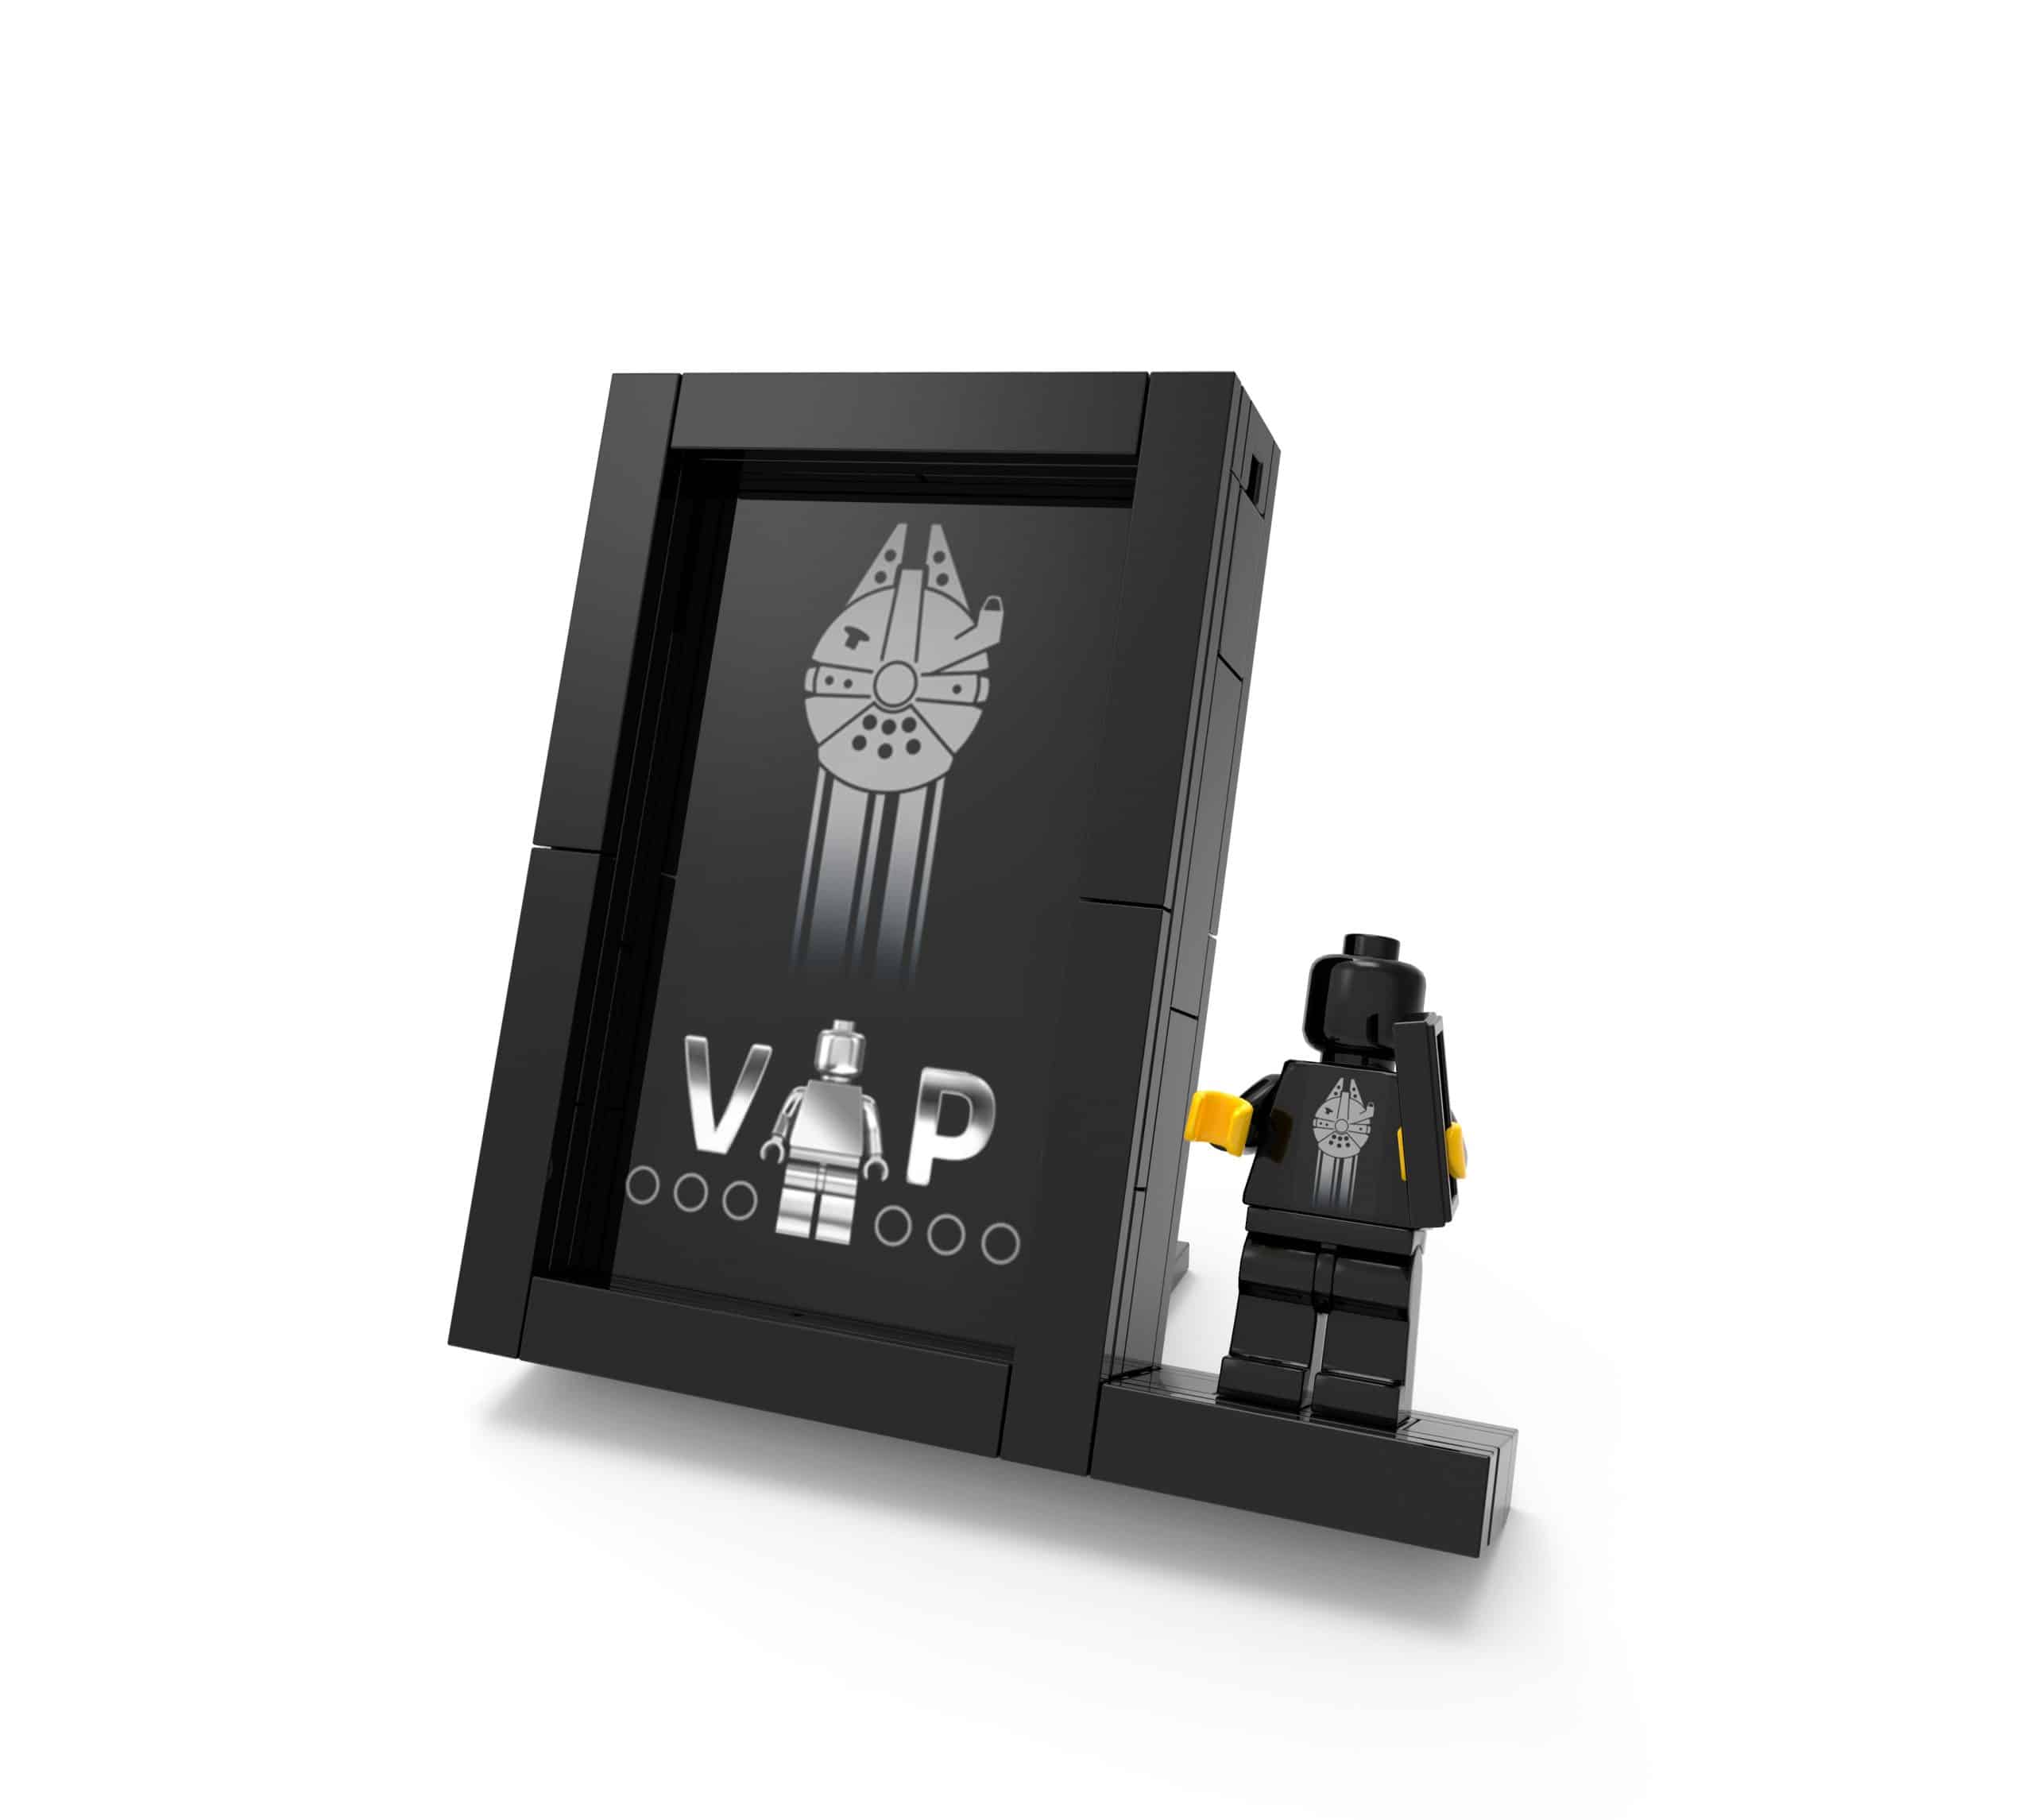 de aanbieding van de gratis exclusieve lego black card displaystandaard 5005747 scaled